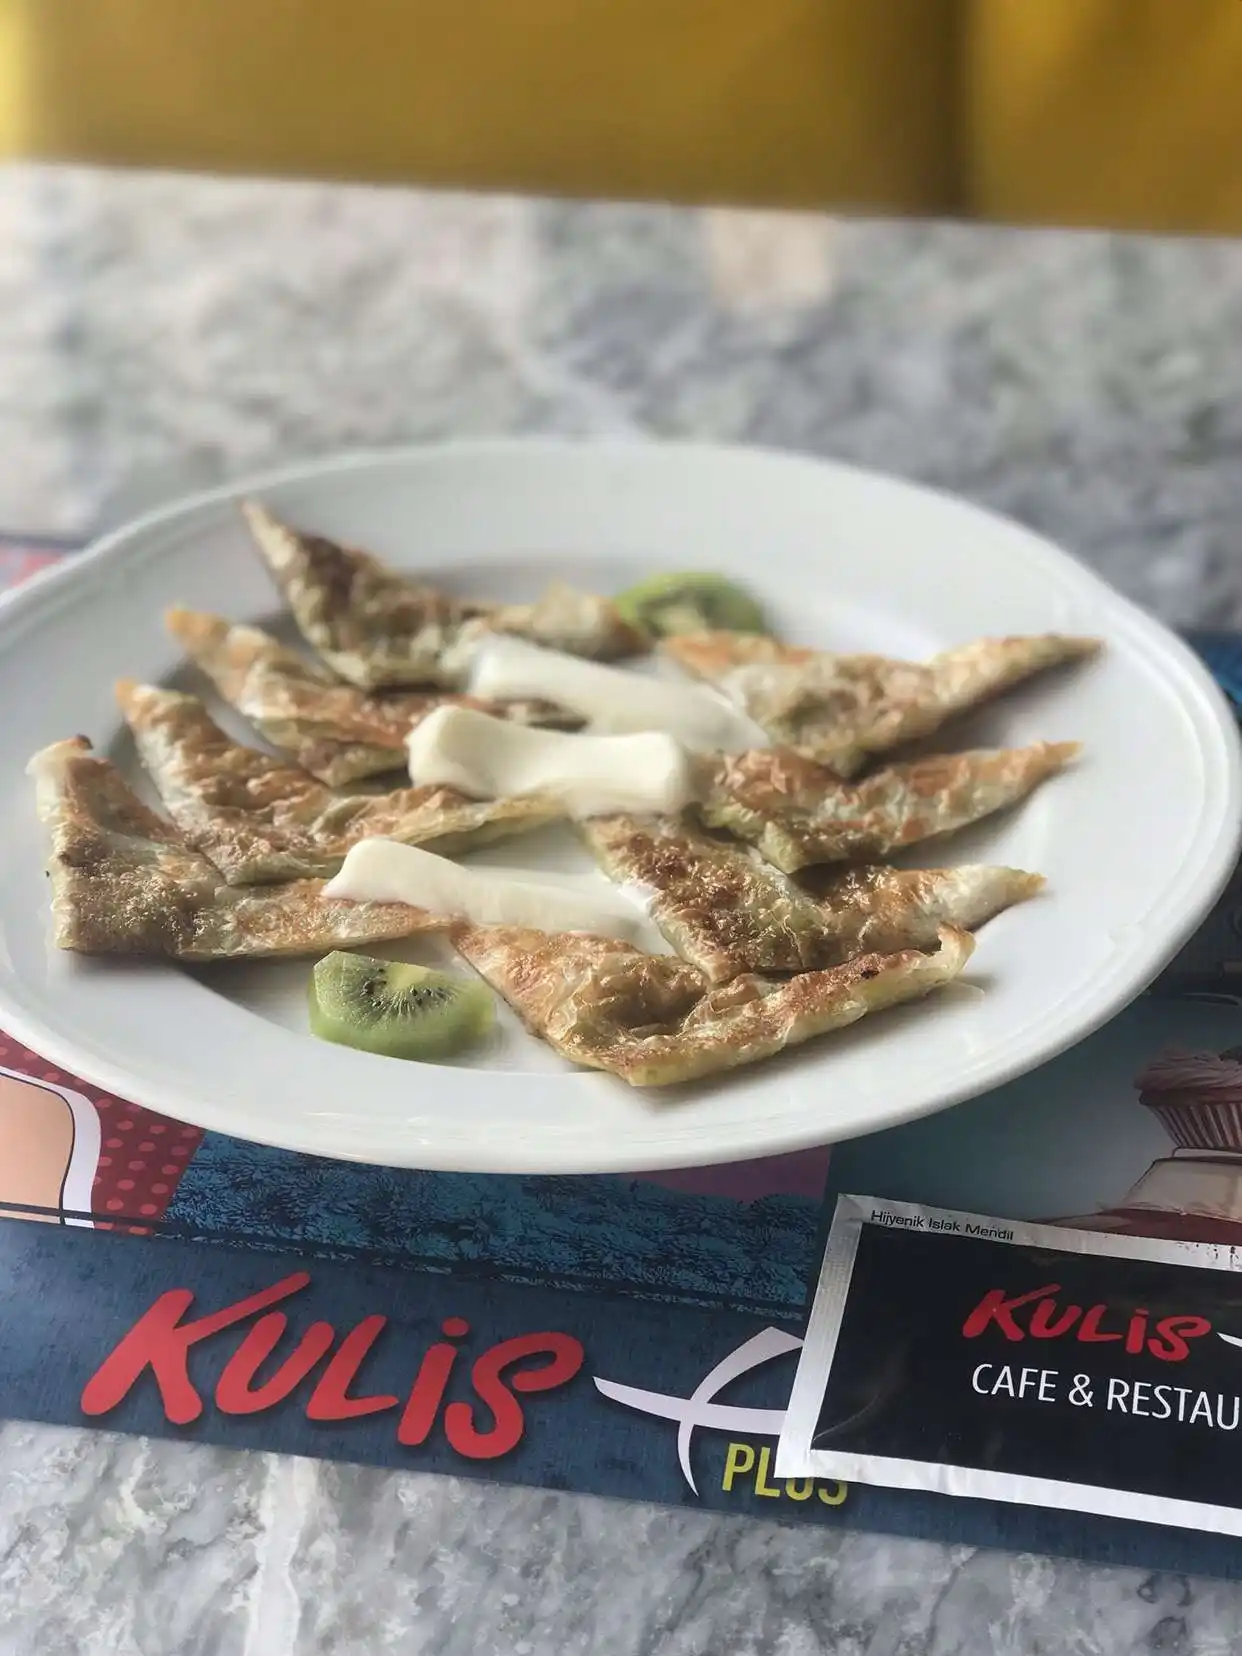 Kulis+ Cafe & Restaurant